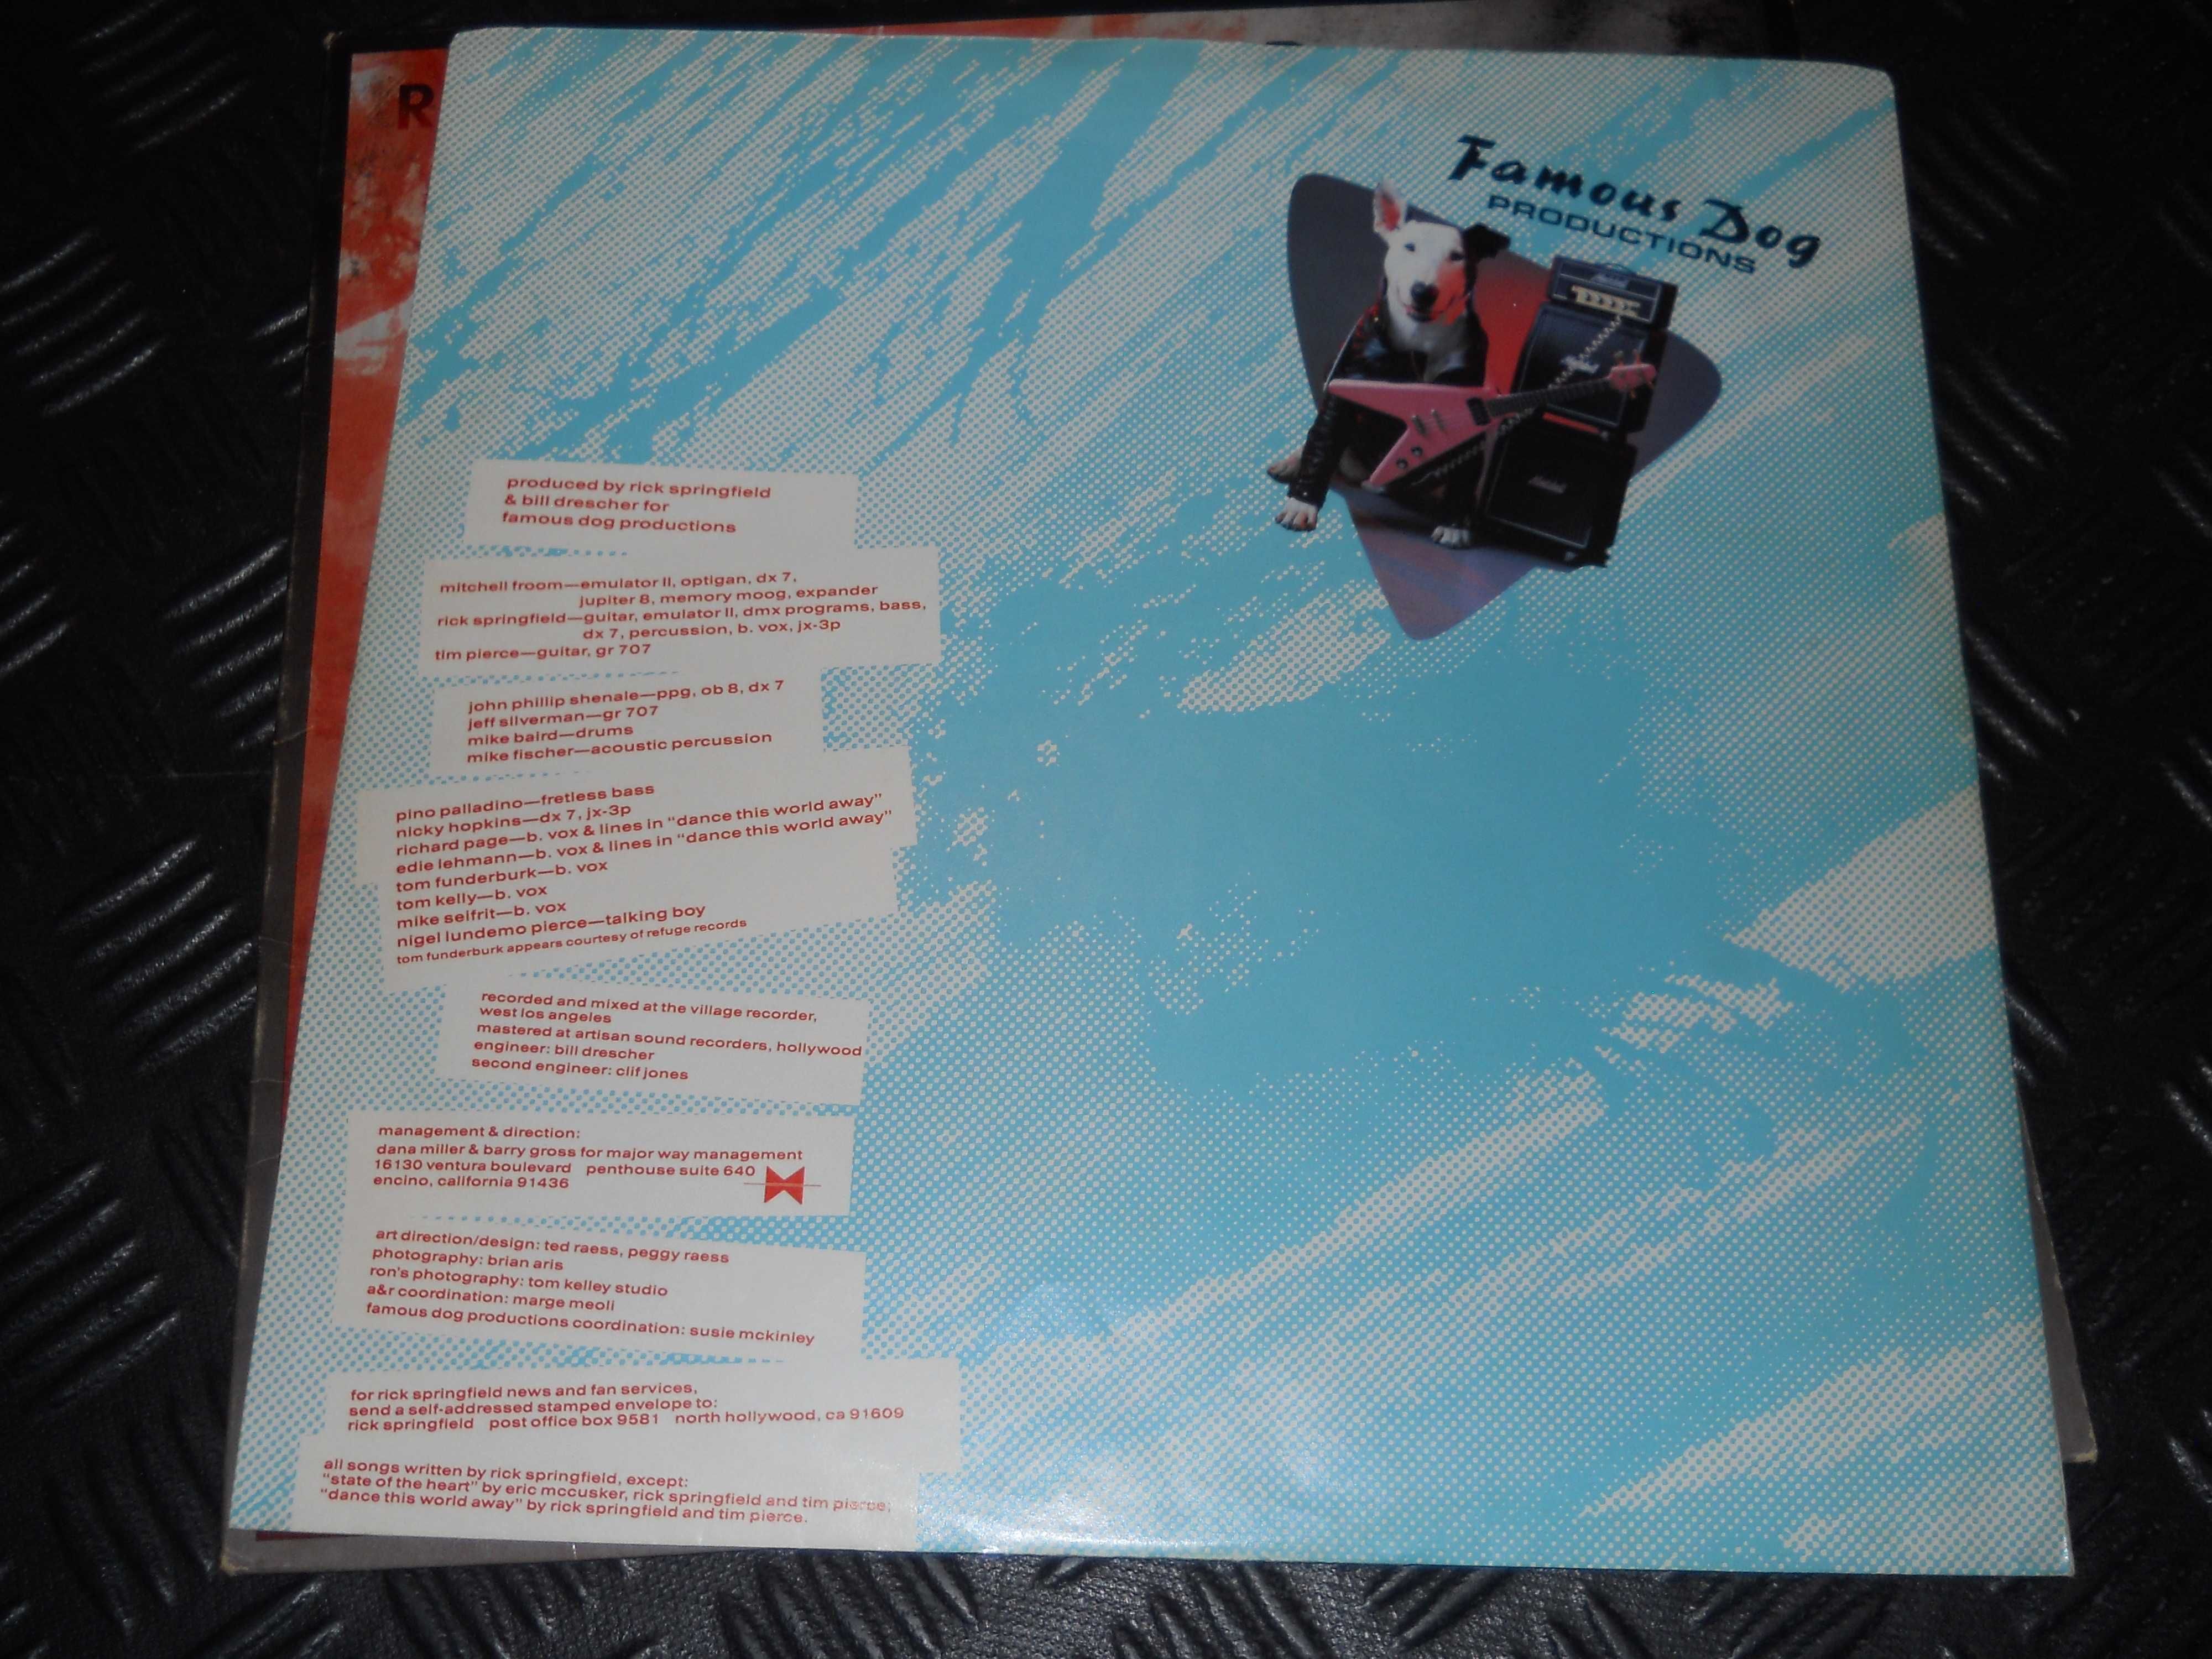 Rick Springfield TAO - płyta winylowa wyd. RCA USA 1985r